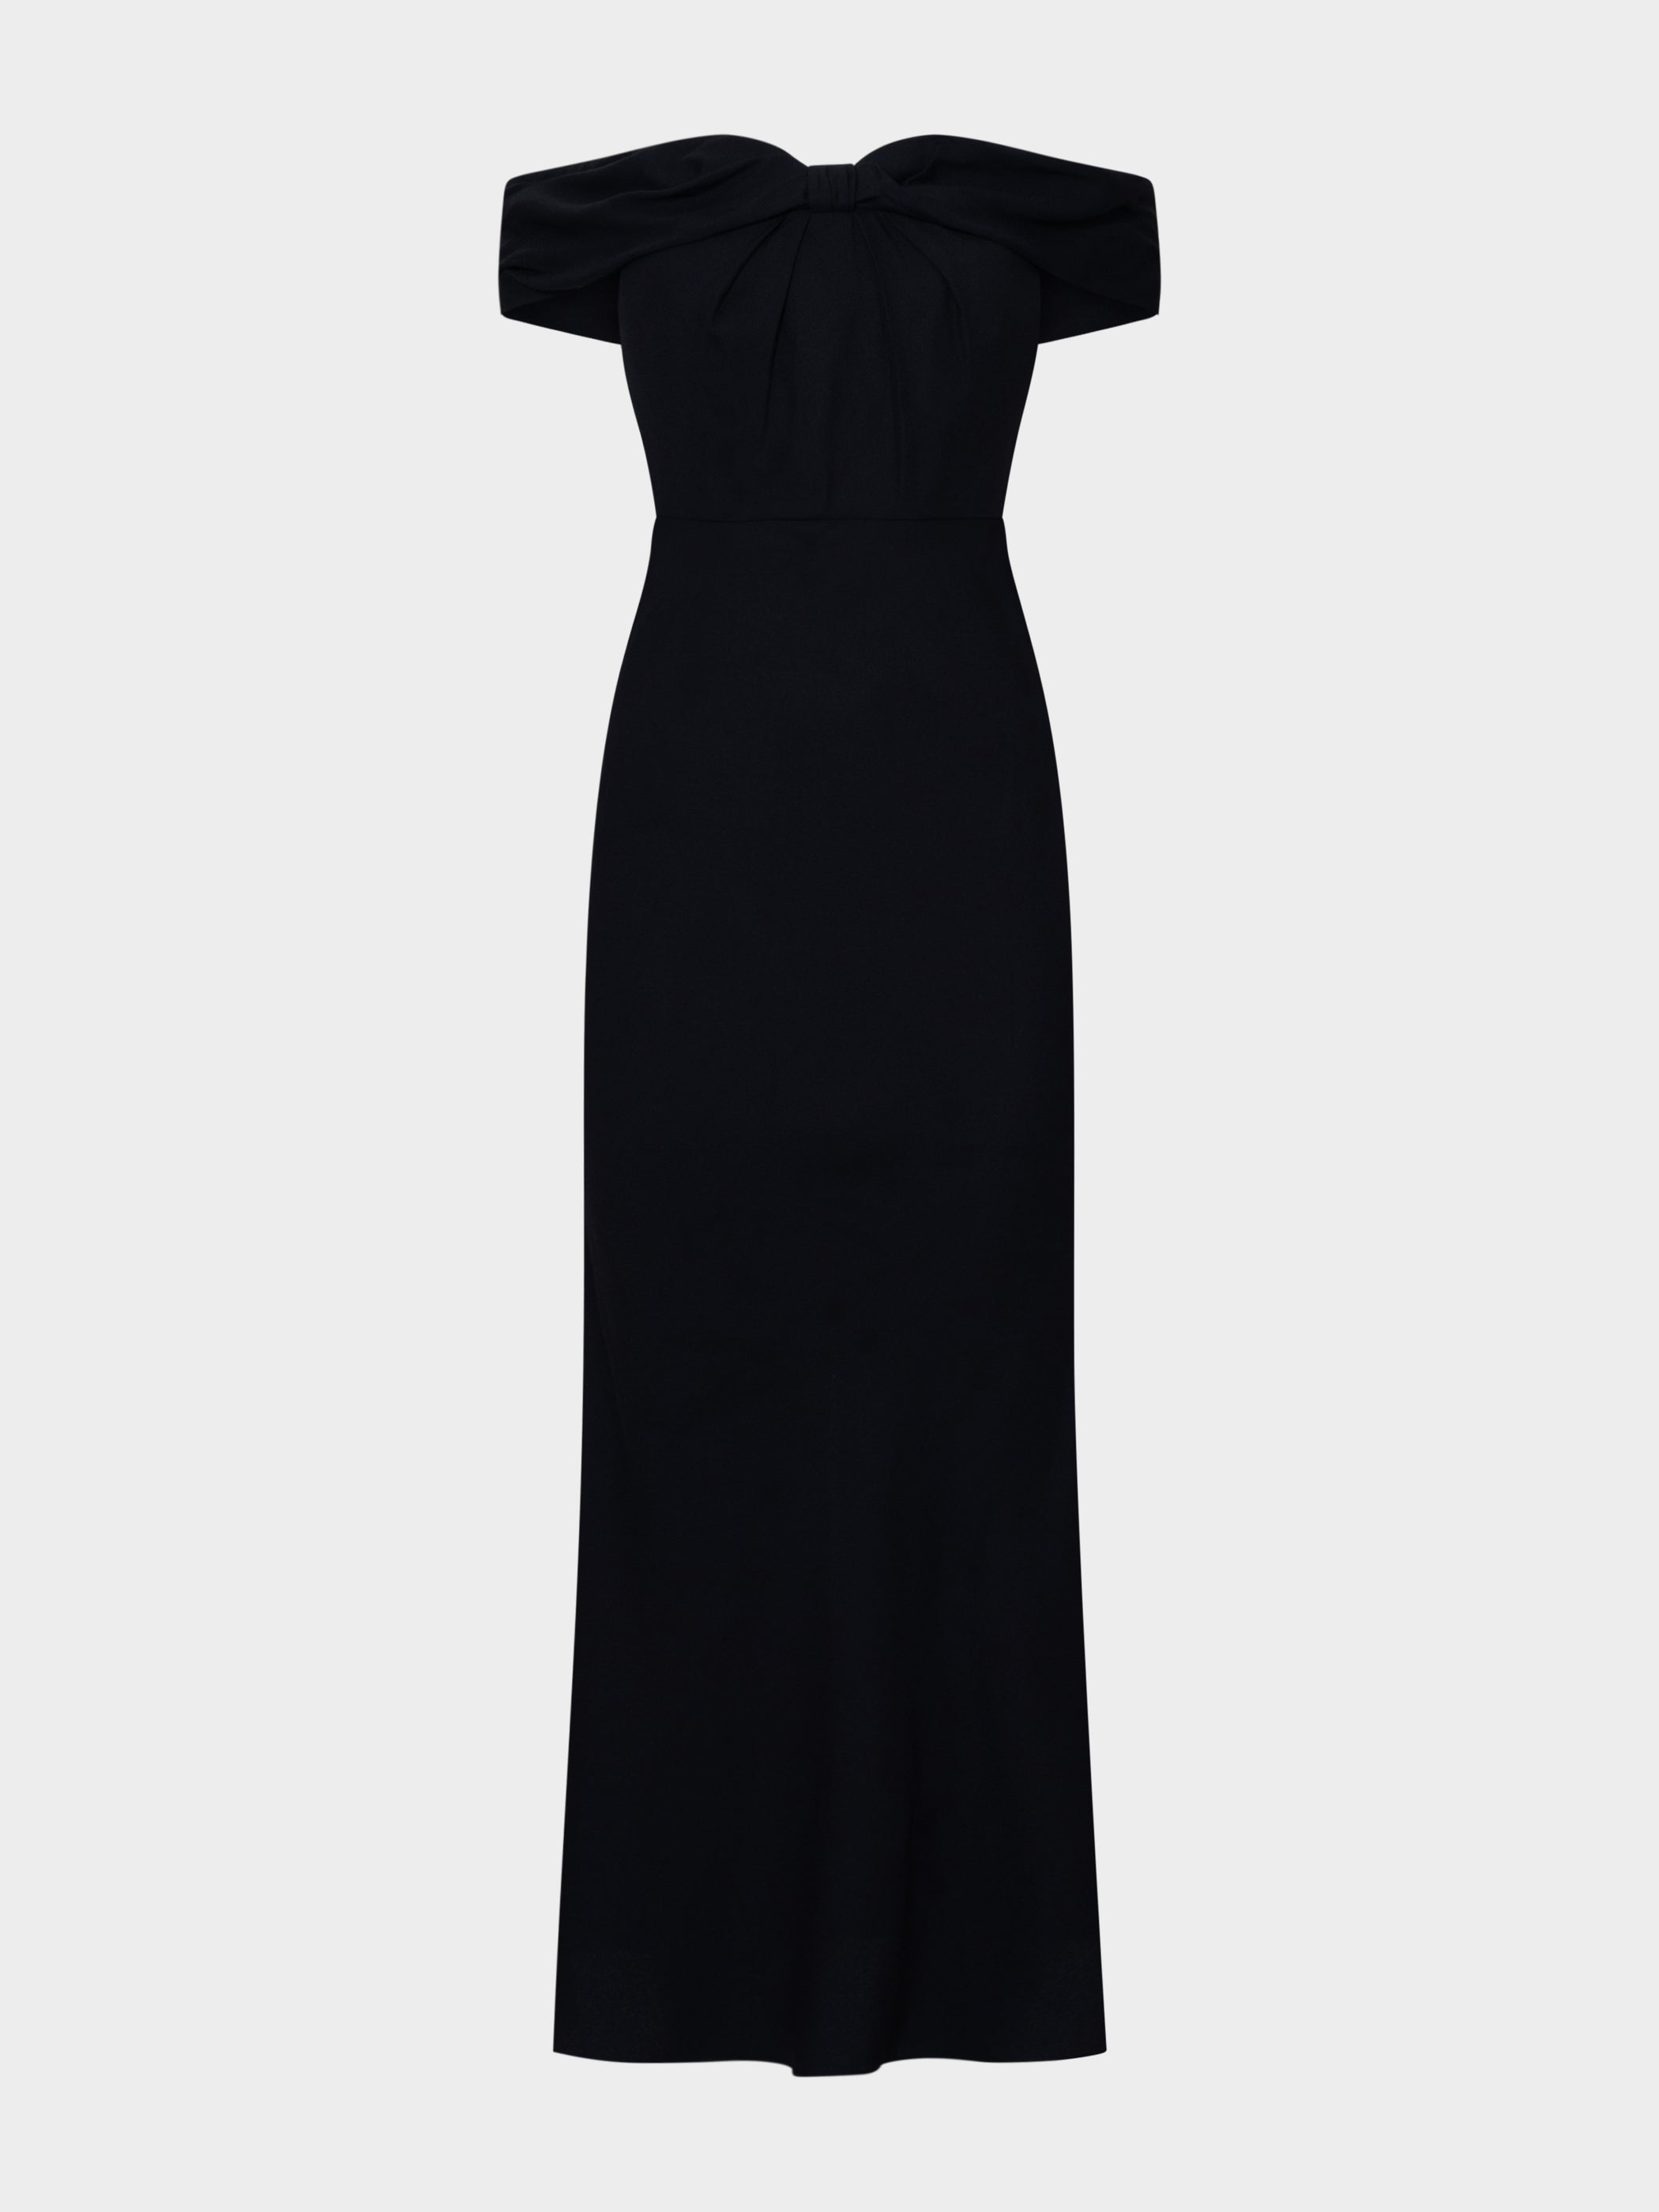 Eloise Dress in Black